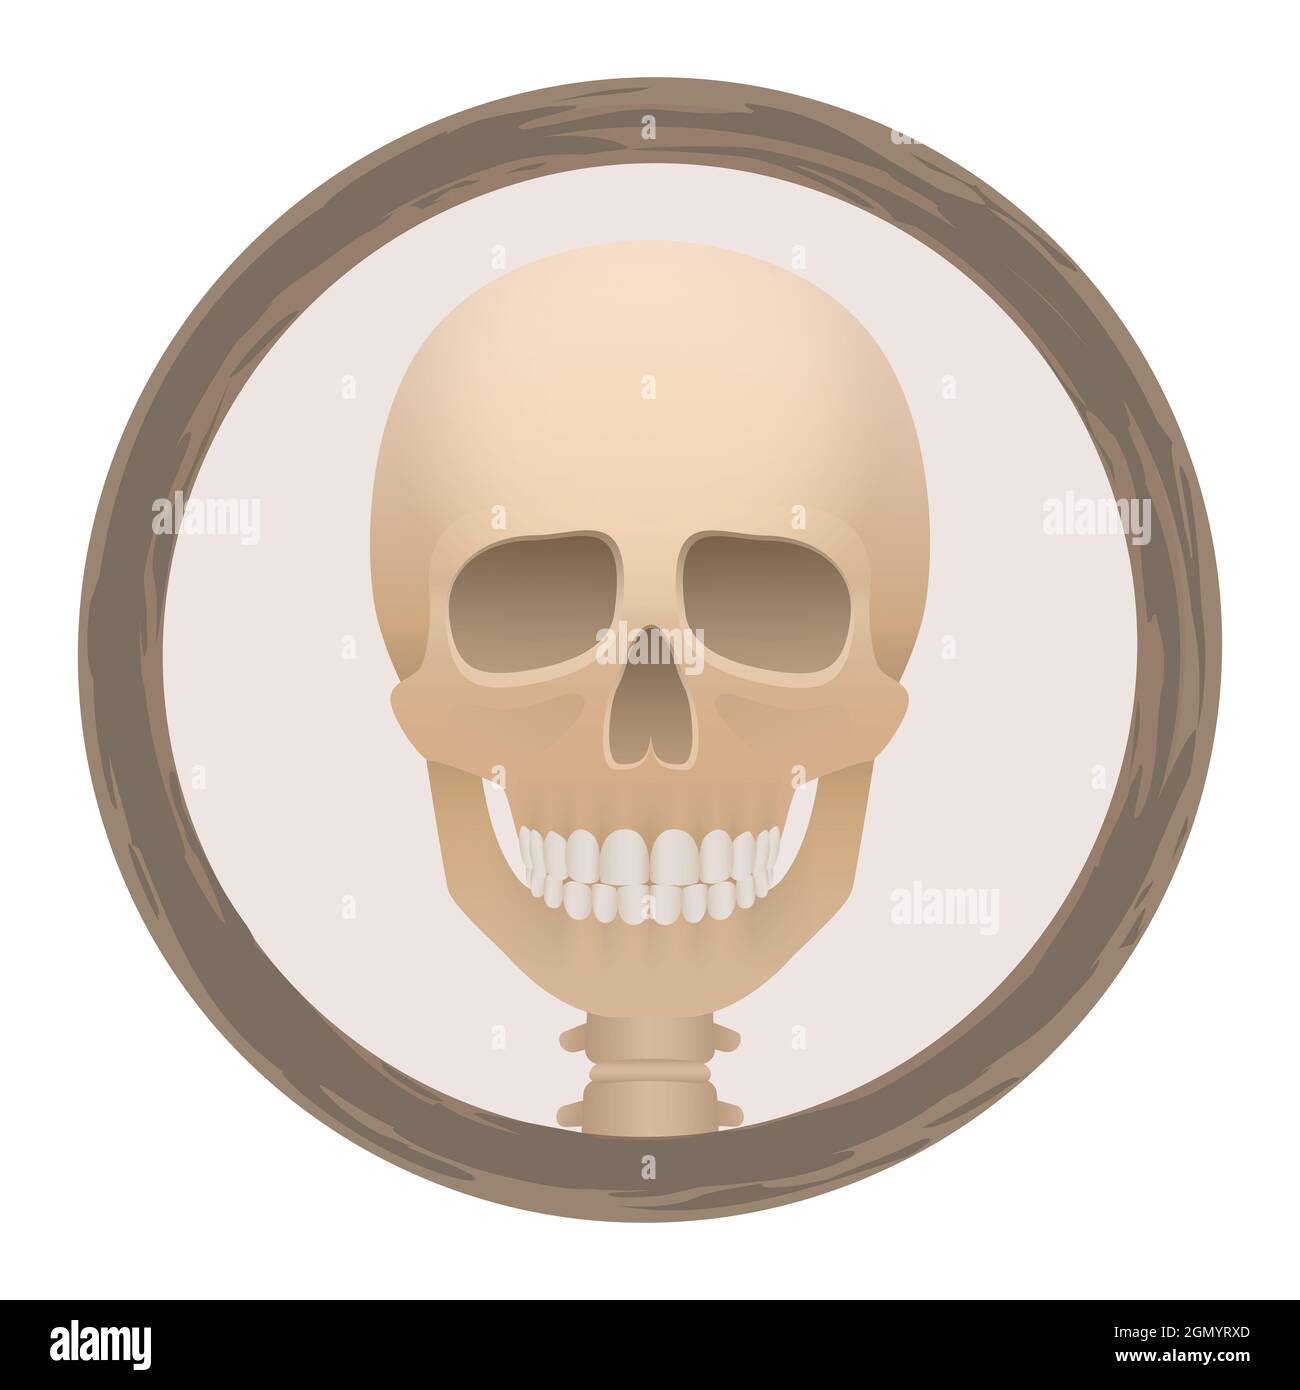 Le logo crâne ou tête de mort dans un cadre rond - créepy, effrayant, effrayant, mais avec un sourire amical - illustration sur fond blanc. Banque D'Images